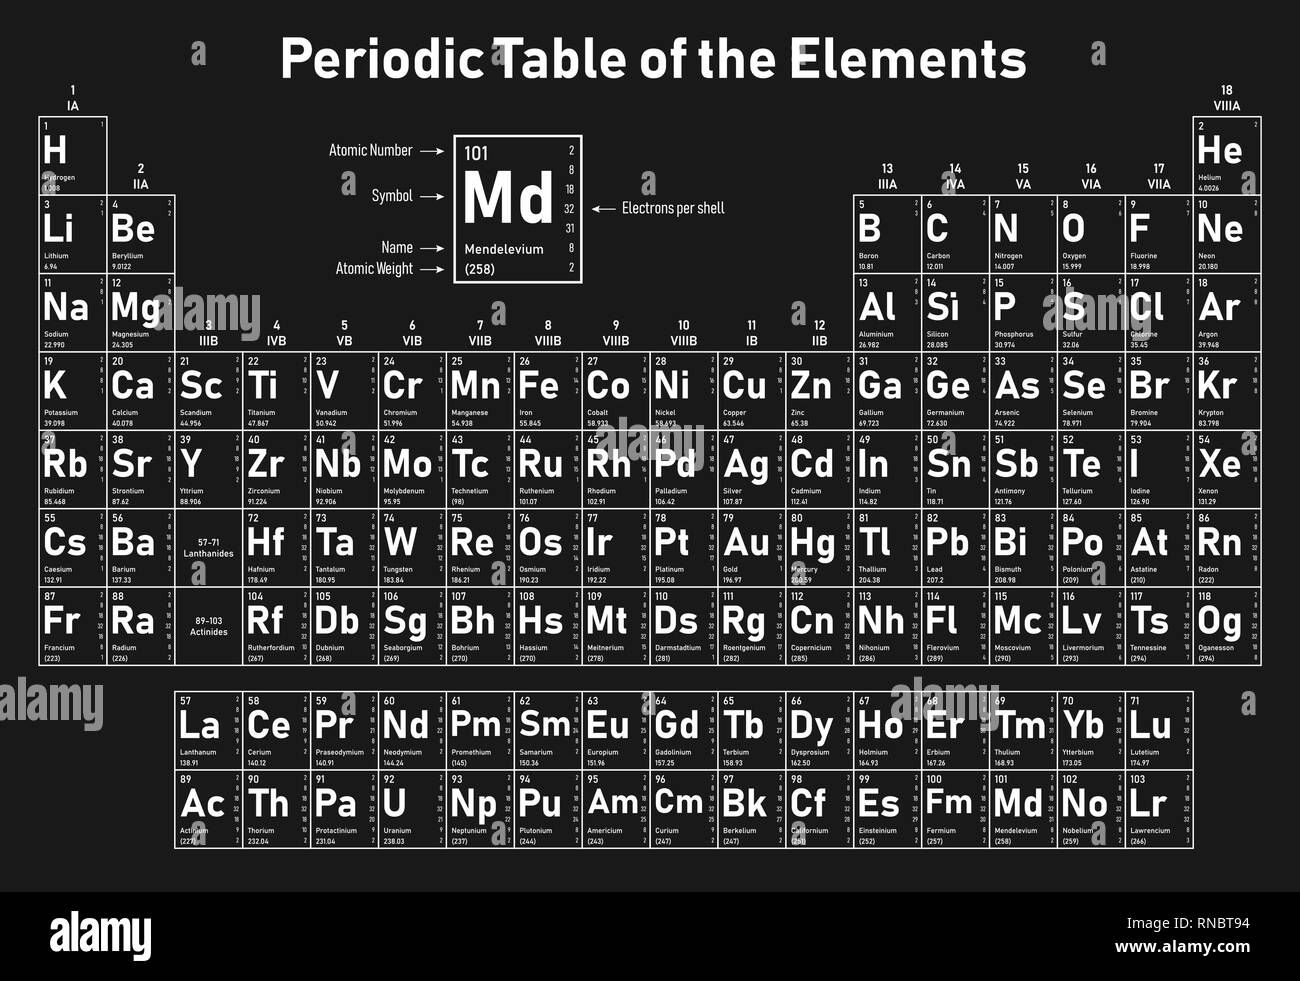 Tavola periodica degli elementi - Mostra numero atomico, simbolo, il nome, peso atomico, elettroni per shell, stato della materia e la categoria dell'elemento Illustrazione Vettoriale